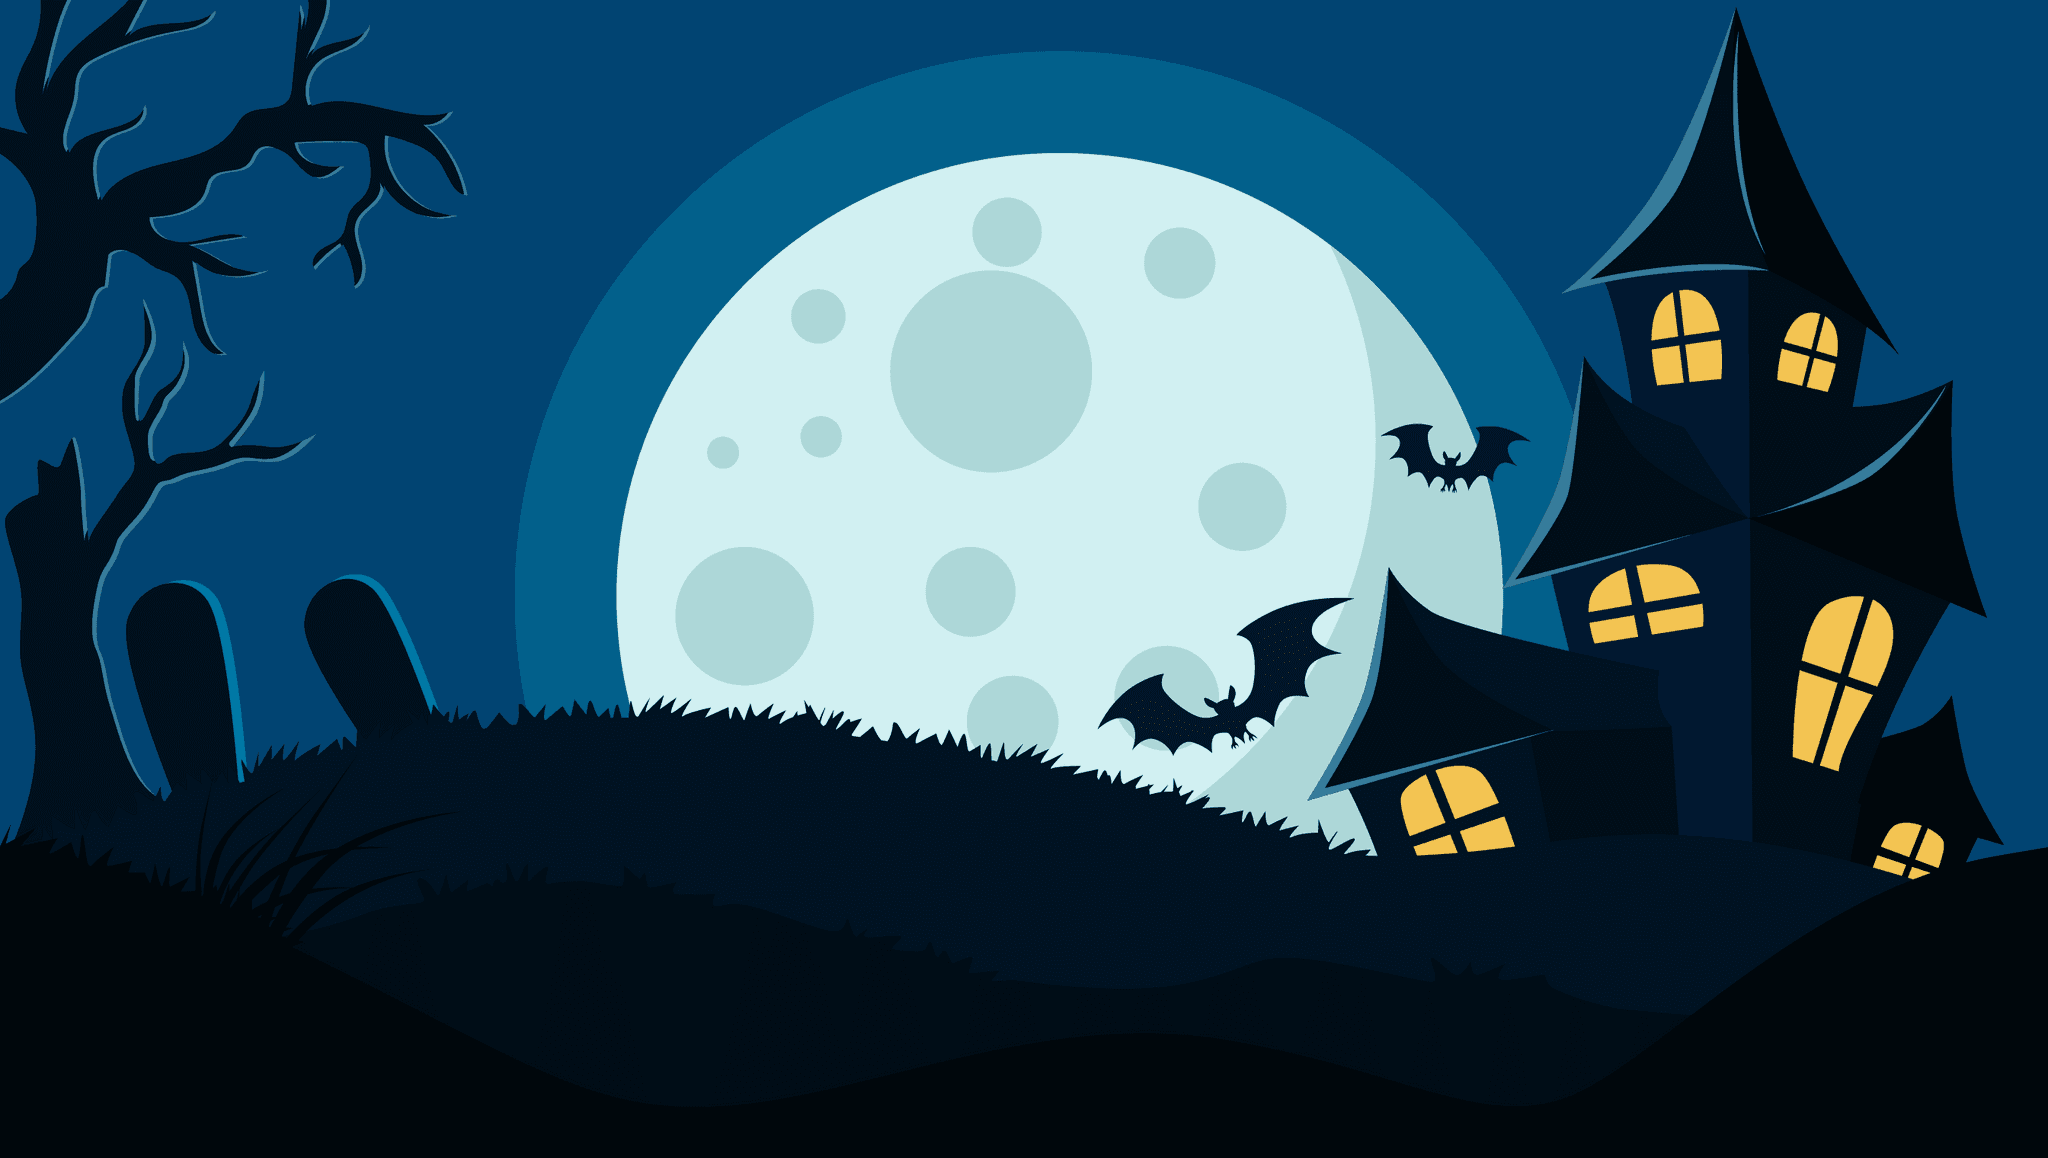 The Spookie Night